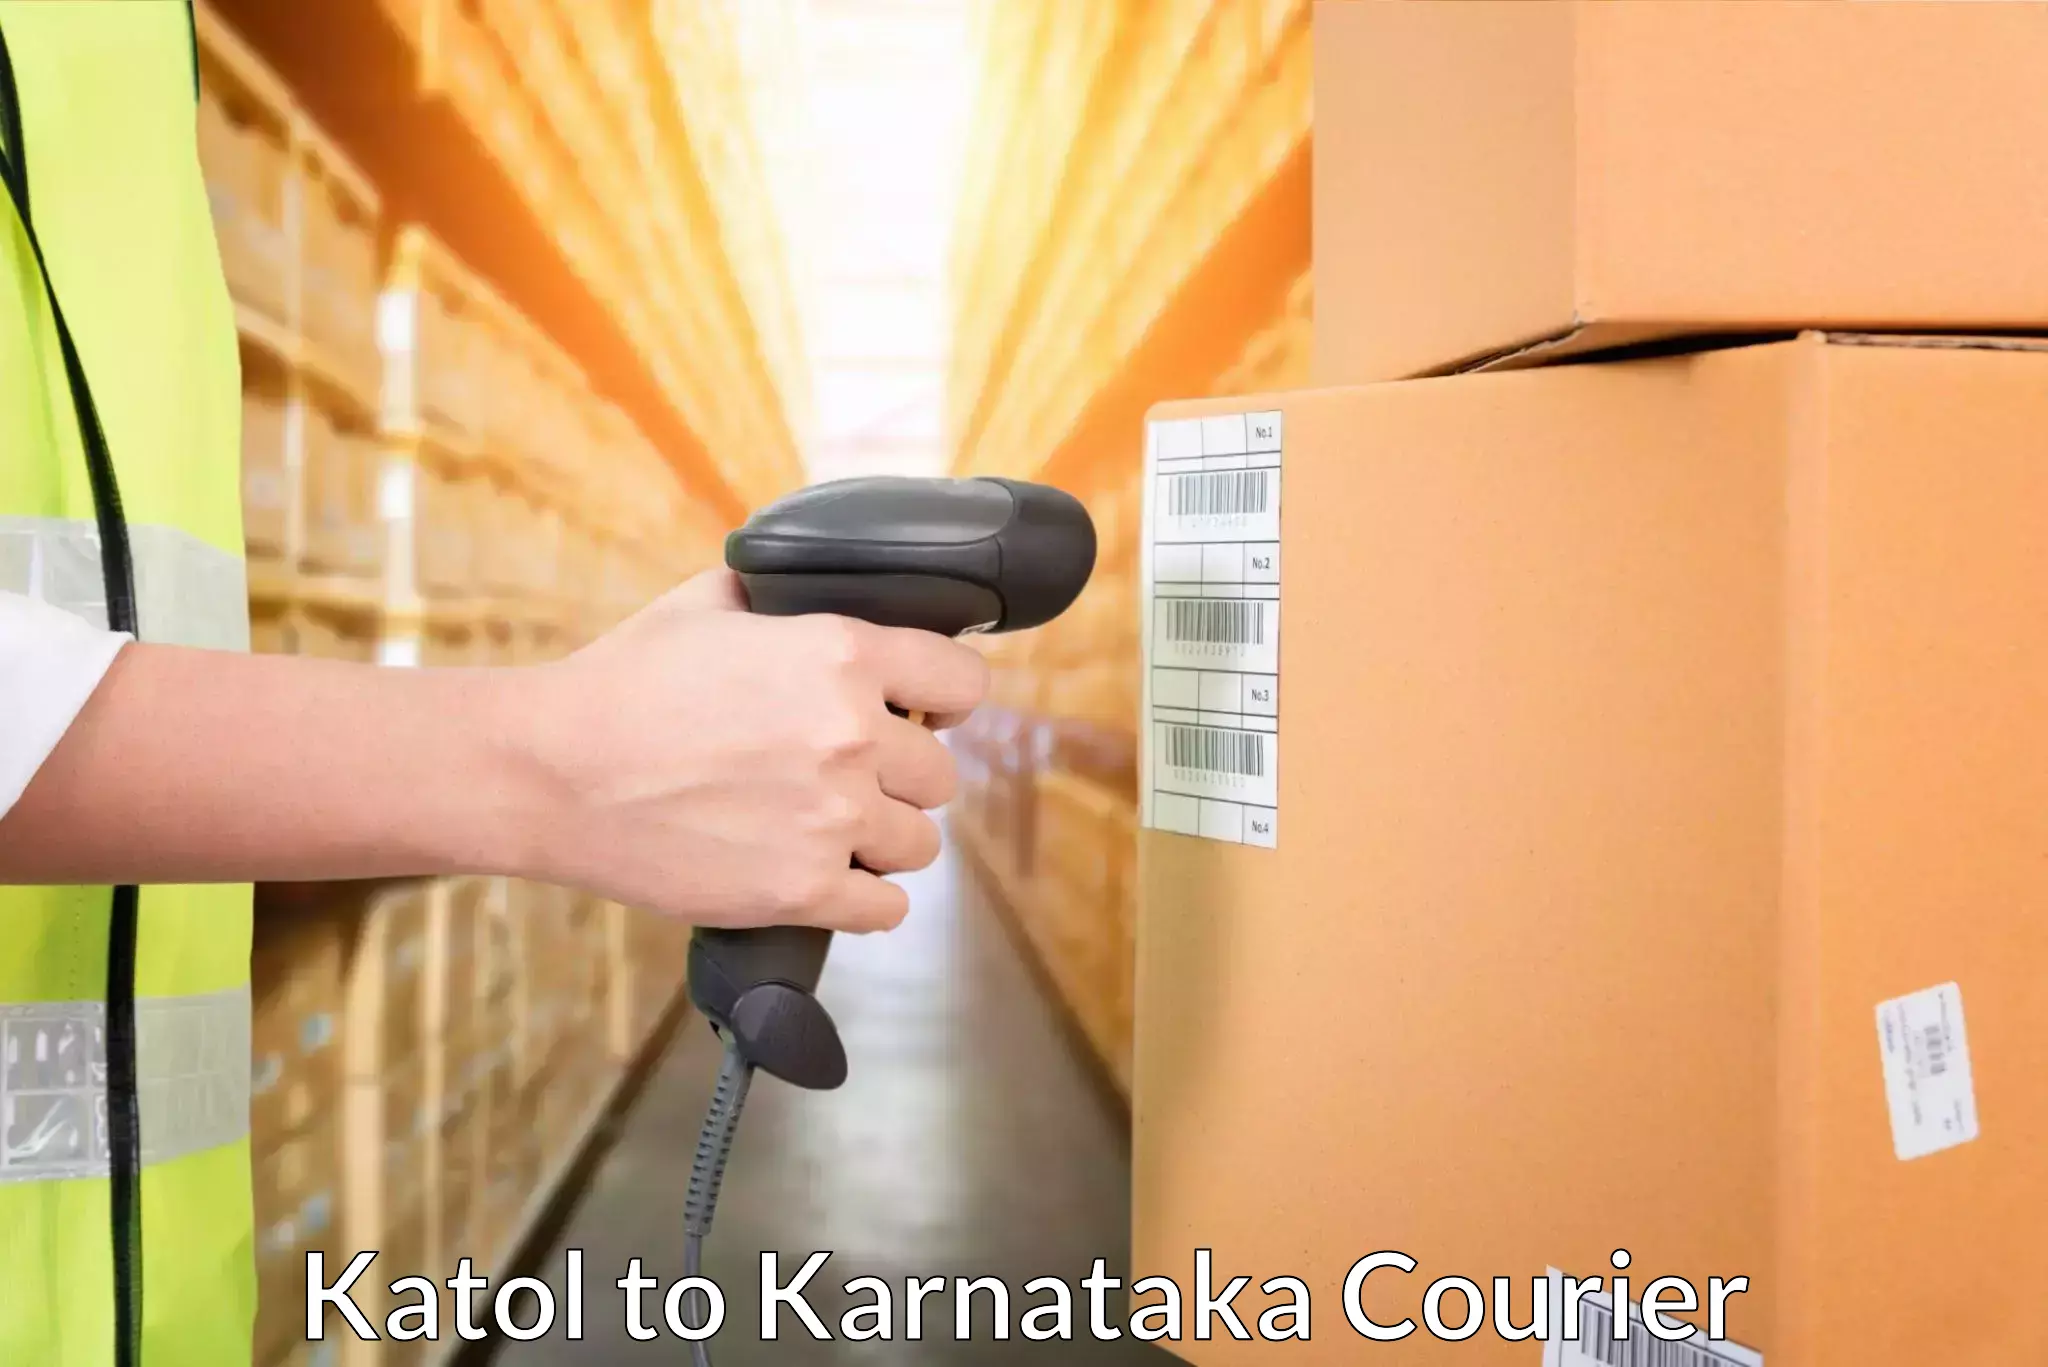 Efficient logistics management Katol to Srirangapatna